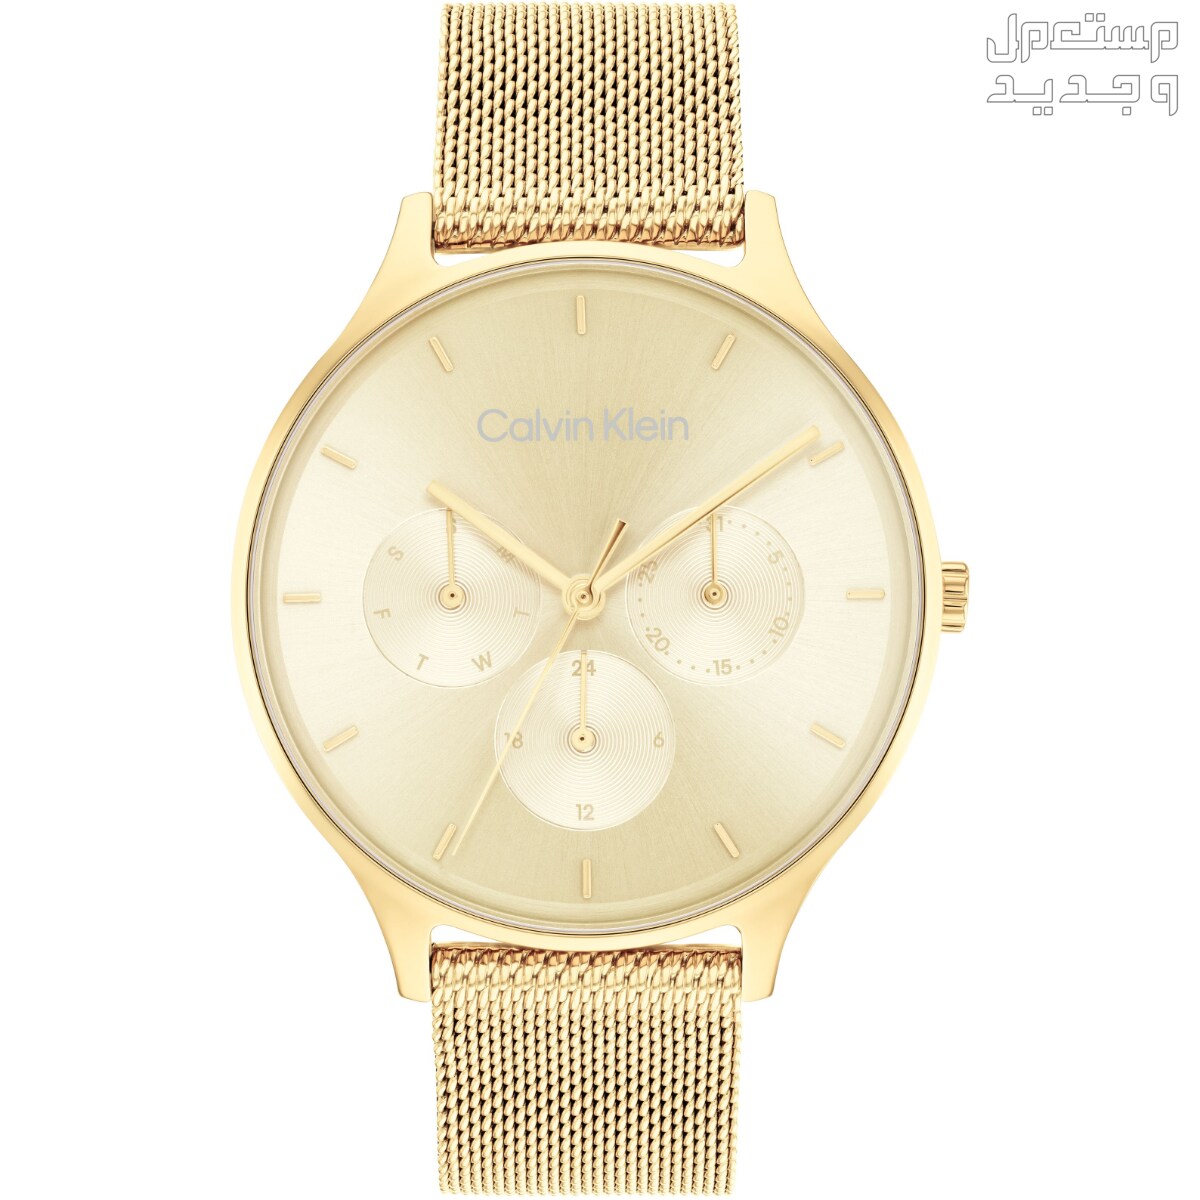 أنواع ساعات يد ذهب نسائية واسعارها في الكويت ساعة Calvin Klein Timeless Multifunction Day and Date Gold Steel Watch 25200103